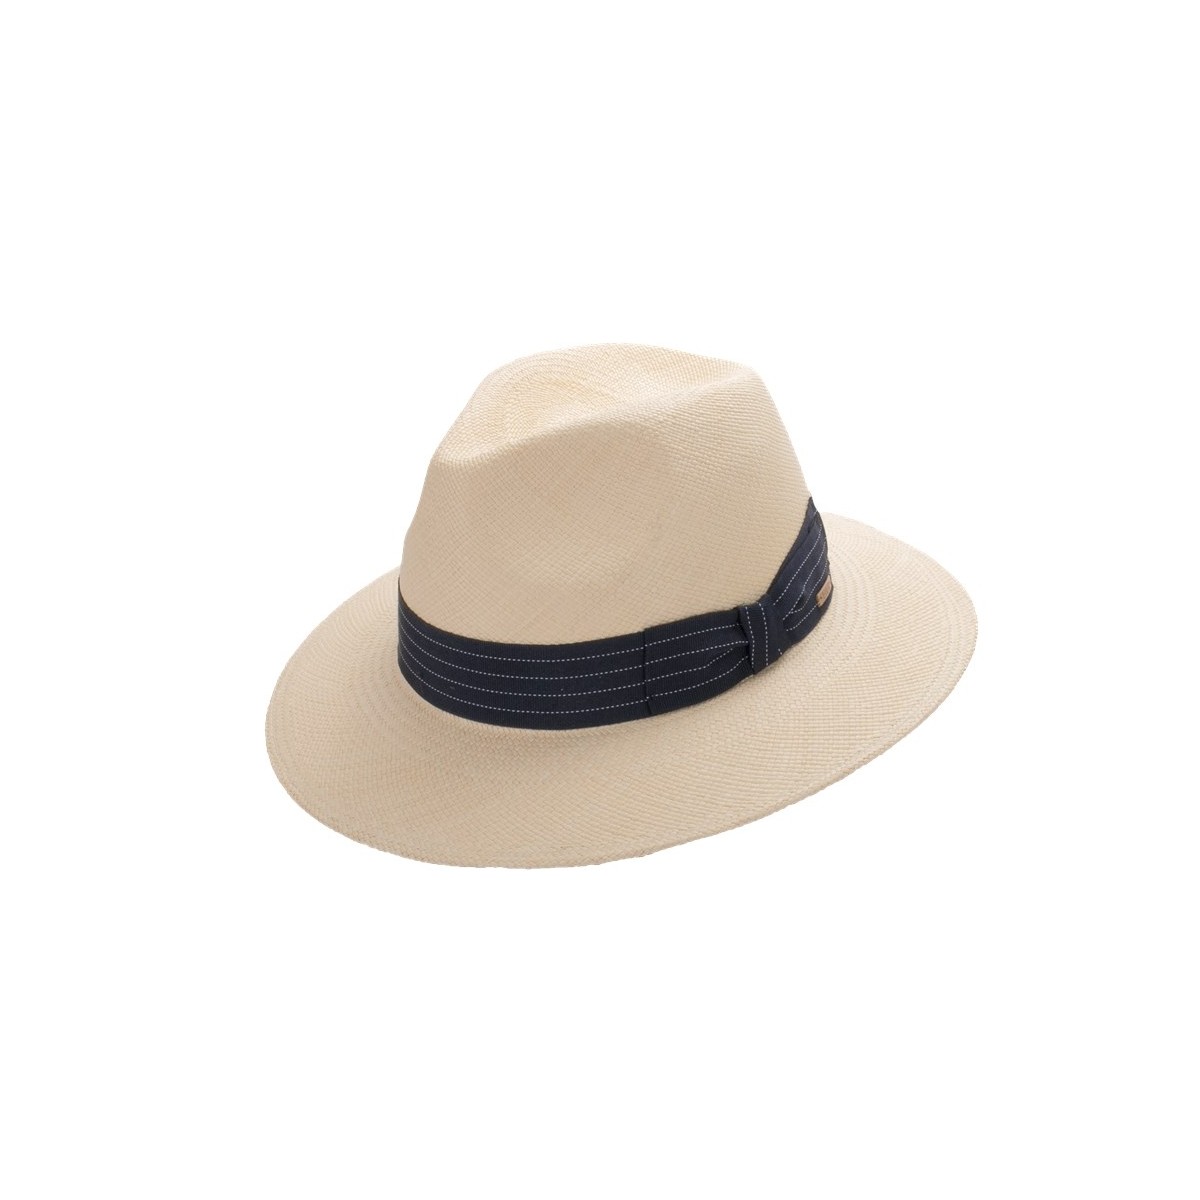 Andrik sombrero de hombre panamá color natural y cinta marina. Fernández y ROCHE